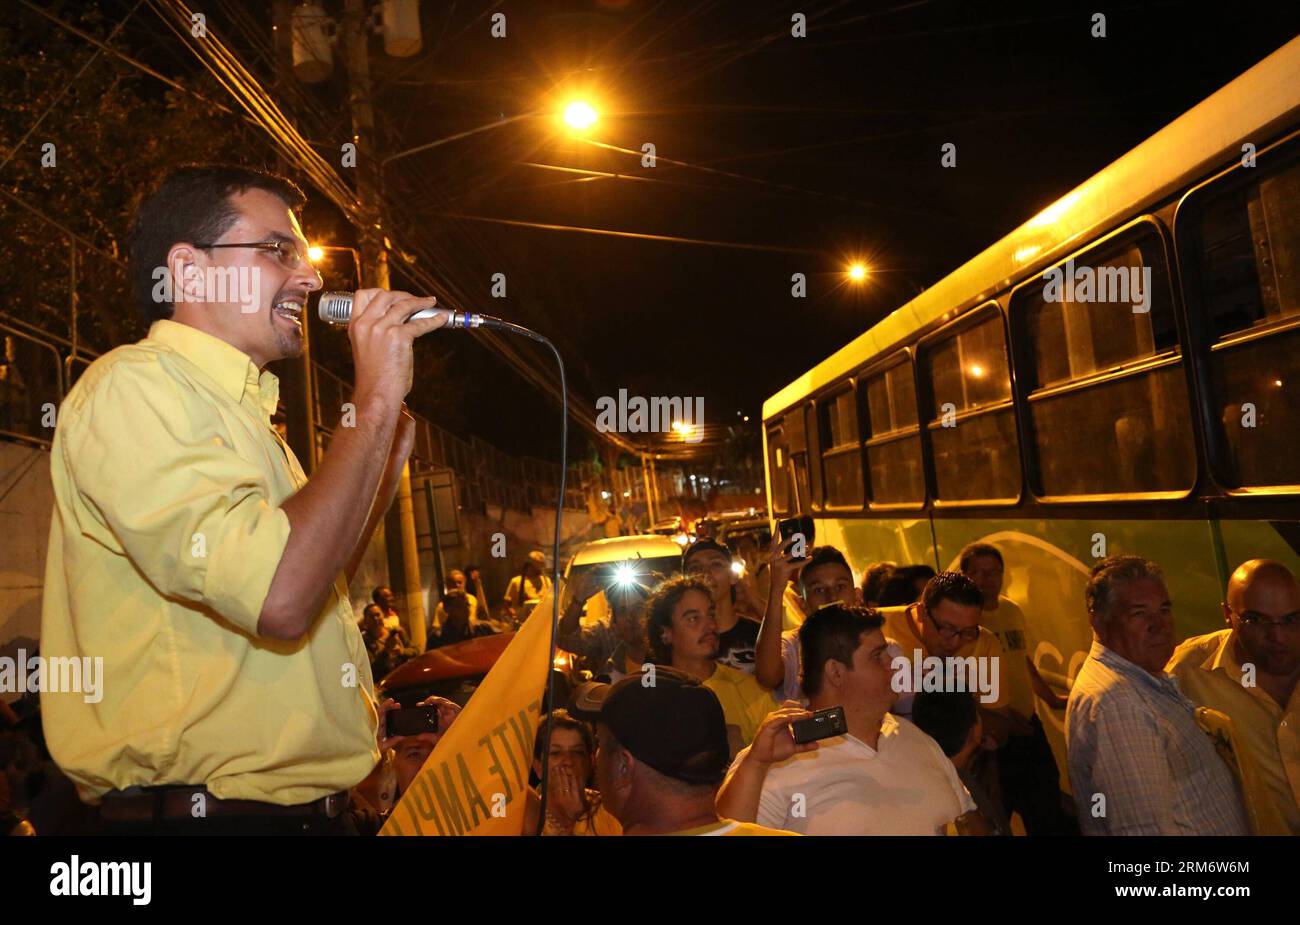 ALAJUELA, 30. Januar 2014 (Xinhua) -- Jose Maria Villalta (L), Präsidentschaftskandidat der Sampling Front, begrüßt seine Anhänger während einer Wahlkampfkampagne in Alajuela, nordöstlich von San Jose, Hauptstadt von Costa Rica, am 30. Januar 2014. Laut der lokalen Presse belegt Villalta mit 14,4 Prozent der Stimmabsicht den zweiten Platz. (Xinhua/Kent Gilbert)(ctt) COSTA RICA-ALAJUELA-POLITICS-ELECTIONS PUBLICATIONxNOTxINxCHN Alajuela Januar 30 2014 XINHUA Jose Mary Villalta l Präsidentschaftskandidat der Front begrüßt seine Anhänger während der Wahlkampfveranstaltung in Alajuela nordöstlich von Alajuela Stockfoto